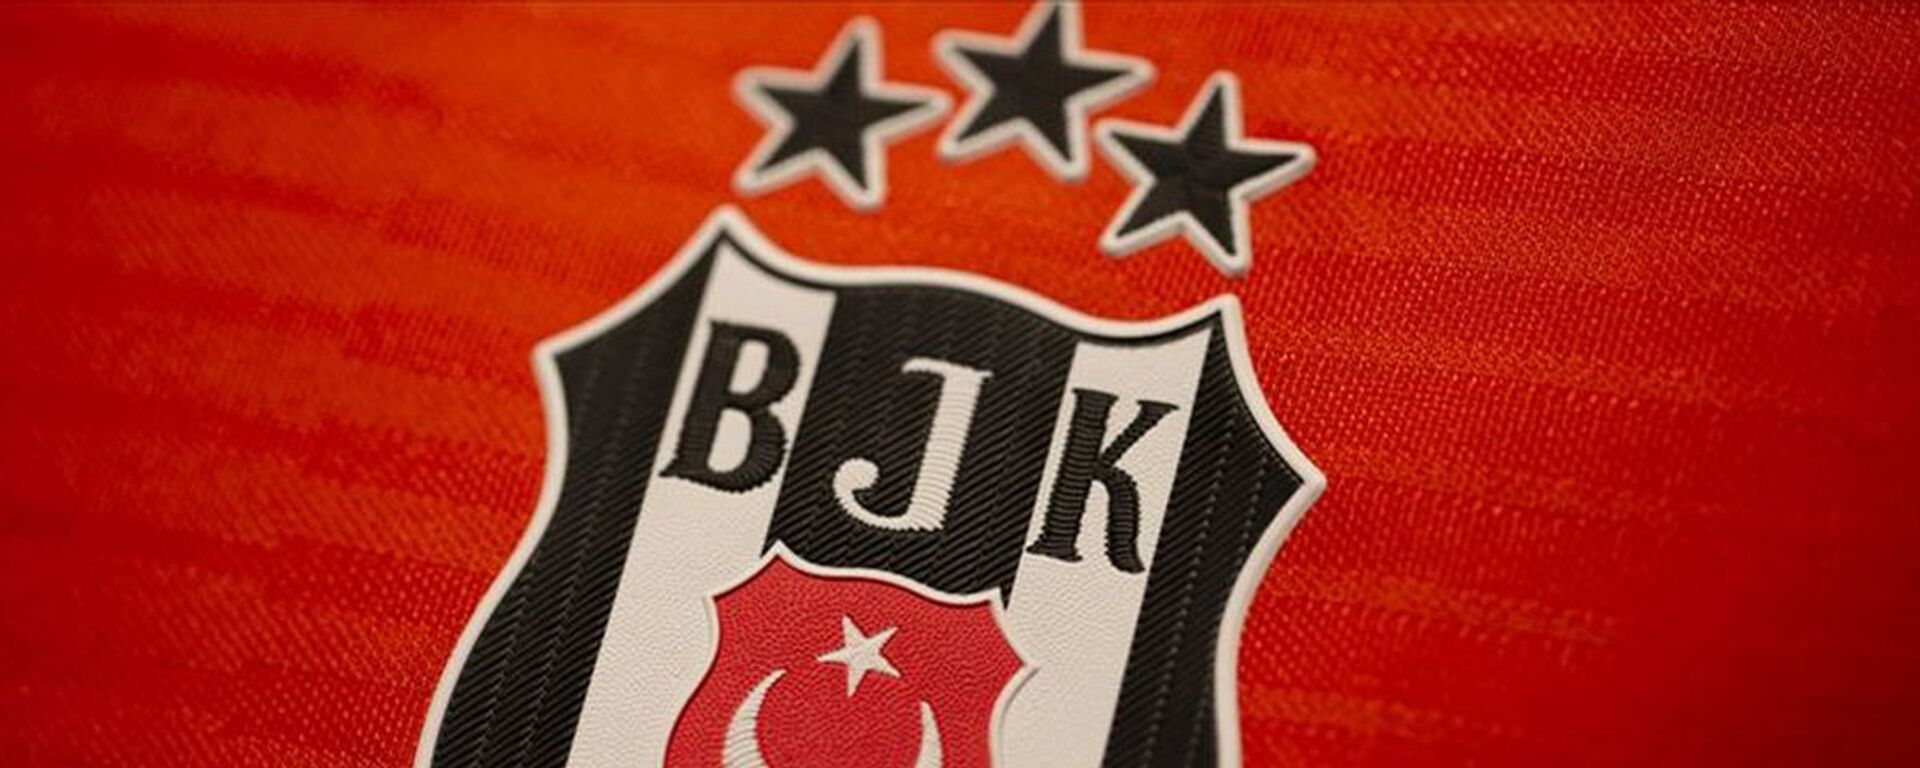 Beşiktaş - forma- logo - Sputnik Türkiye, 1920, 13.07.2021